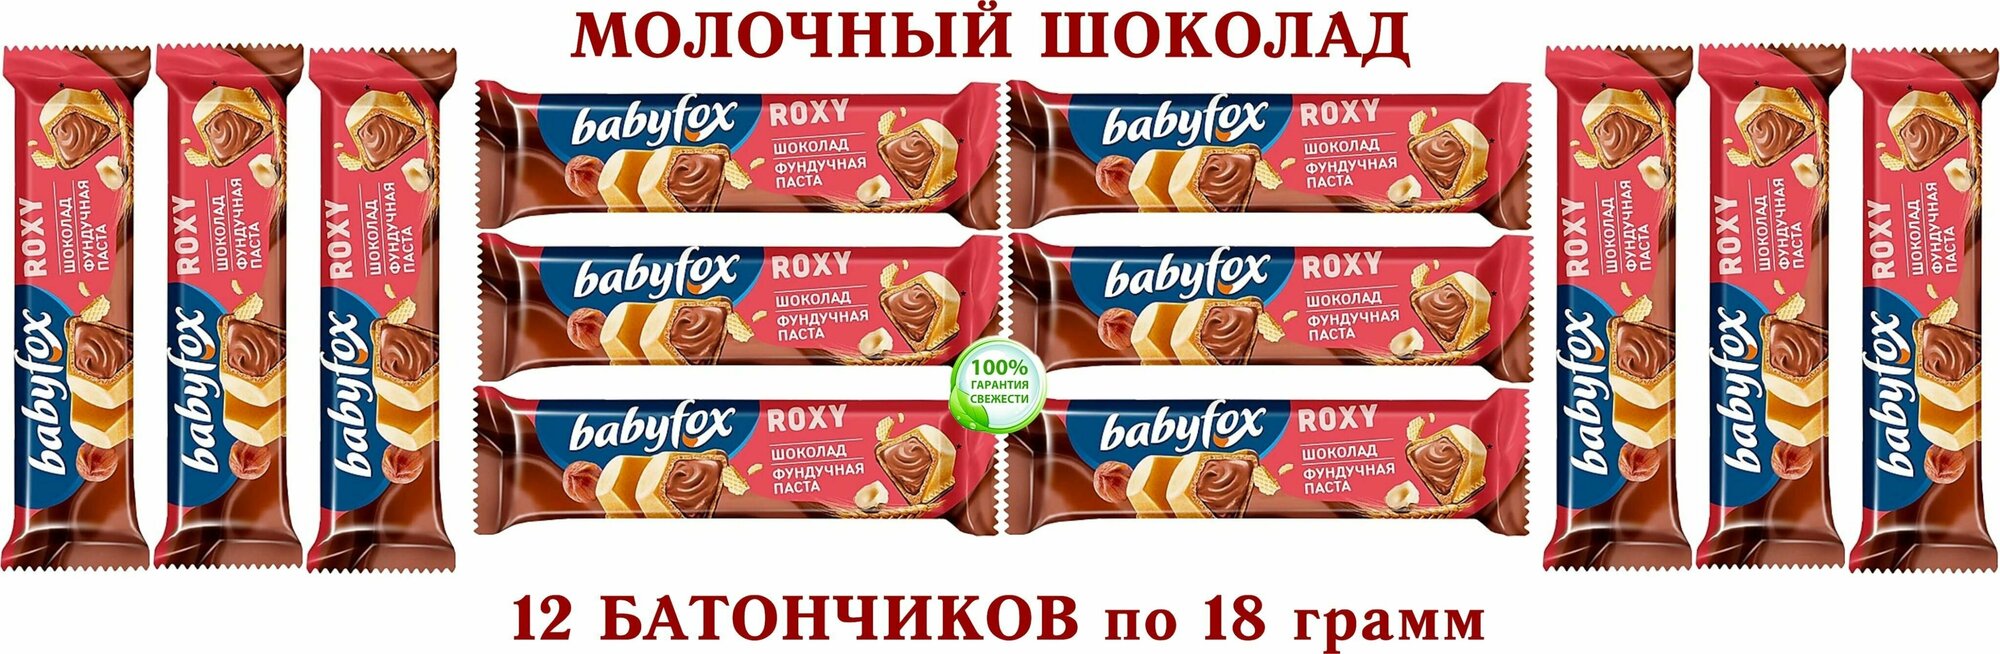 Вафельный батончик BabyFox ROXY в молочном шоколаде с шоколадно-ореховой начинкой на основе фундучной пасты с добавлением какао,12*18 гр.